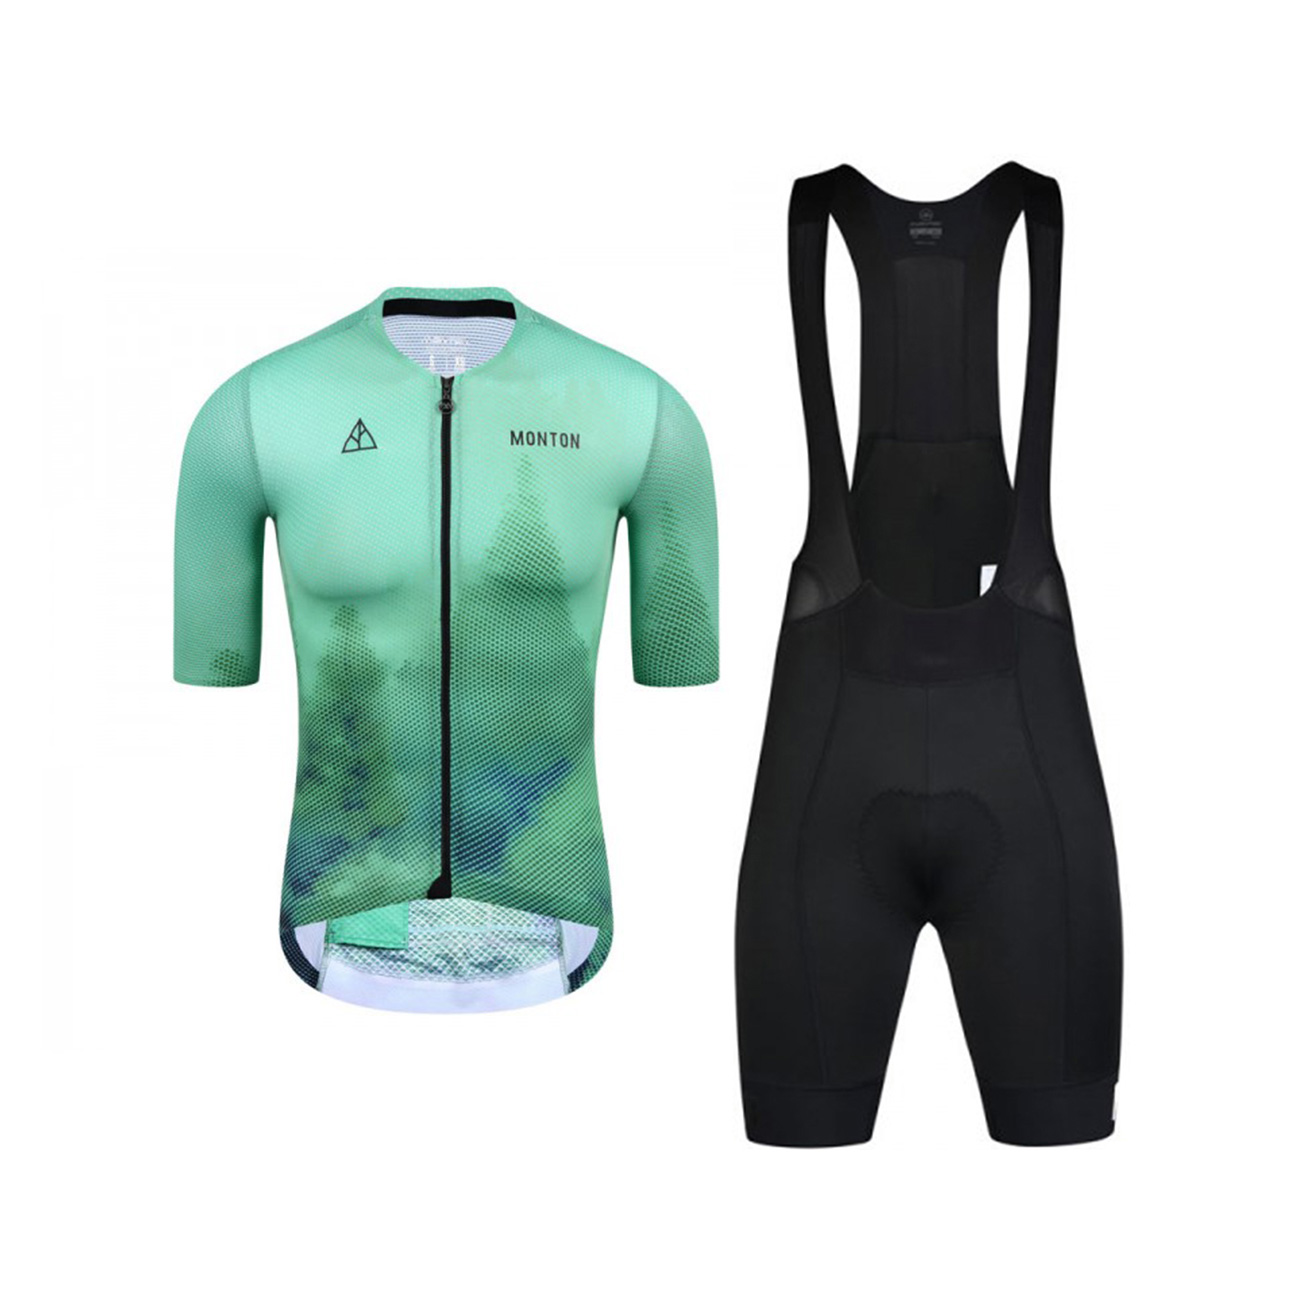 MONTON Cyklistický krátký dres a krátké kalhoty - FOREST - zelená/bílá/černá